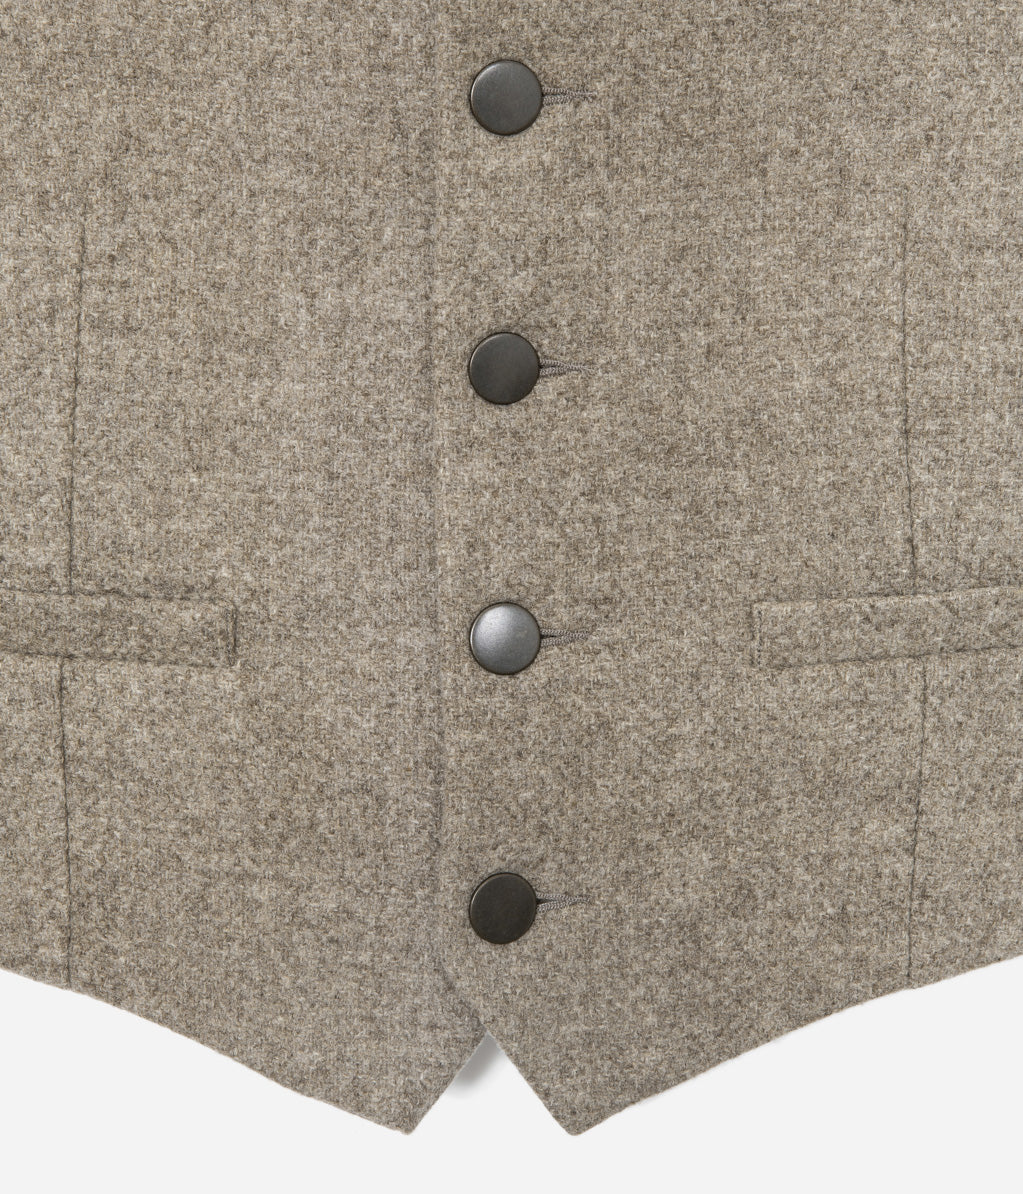 Tonton et Fils - Le veston homme «Auguste» laine naturelle écrue - Fabriqué en France - Vue sur les poches avant